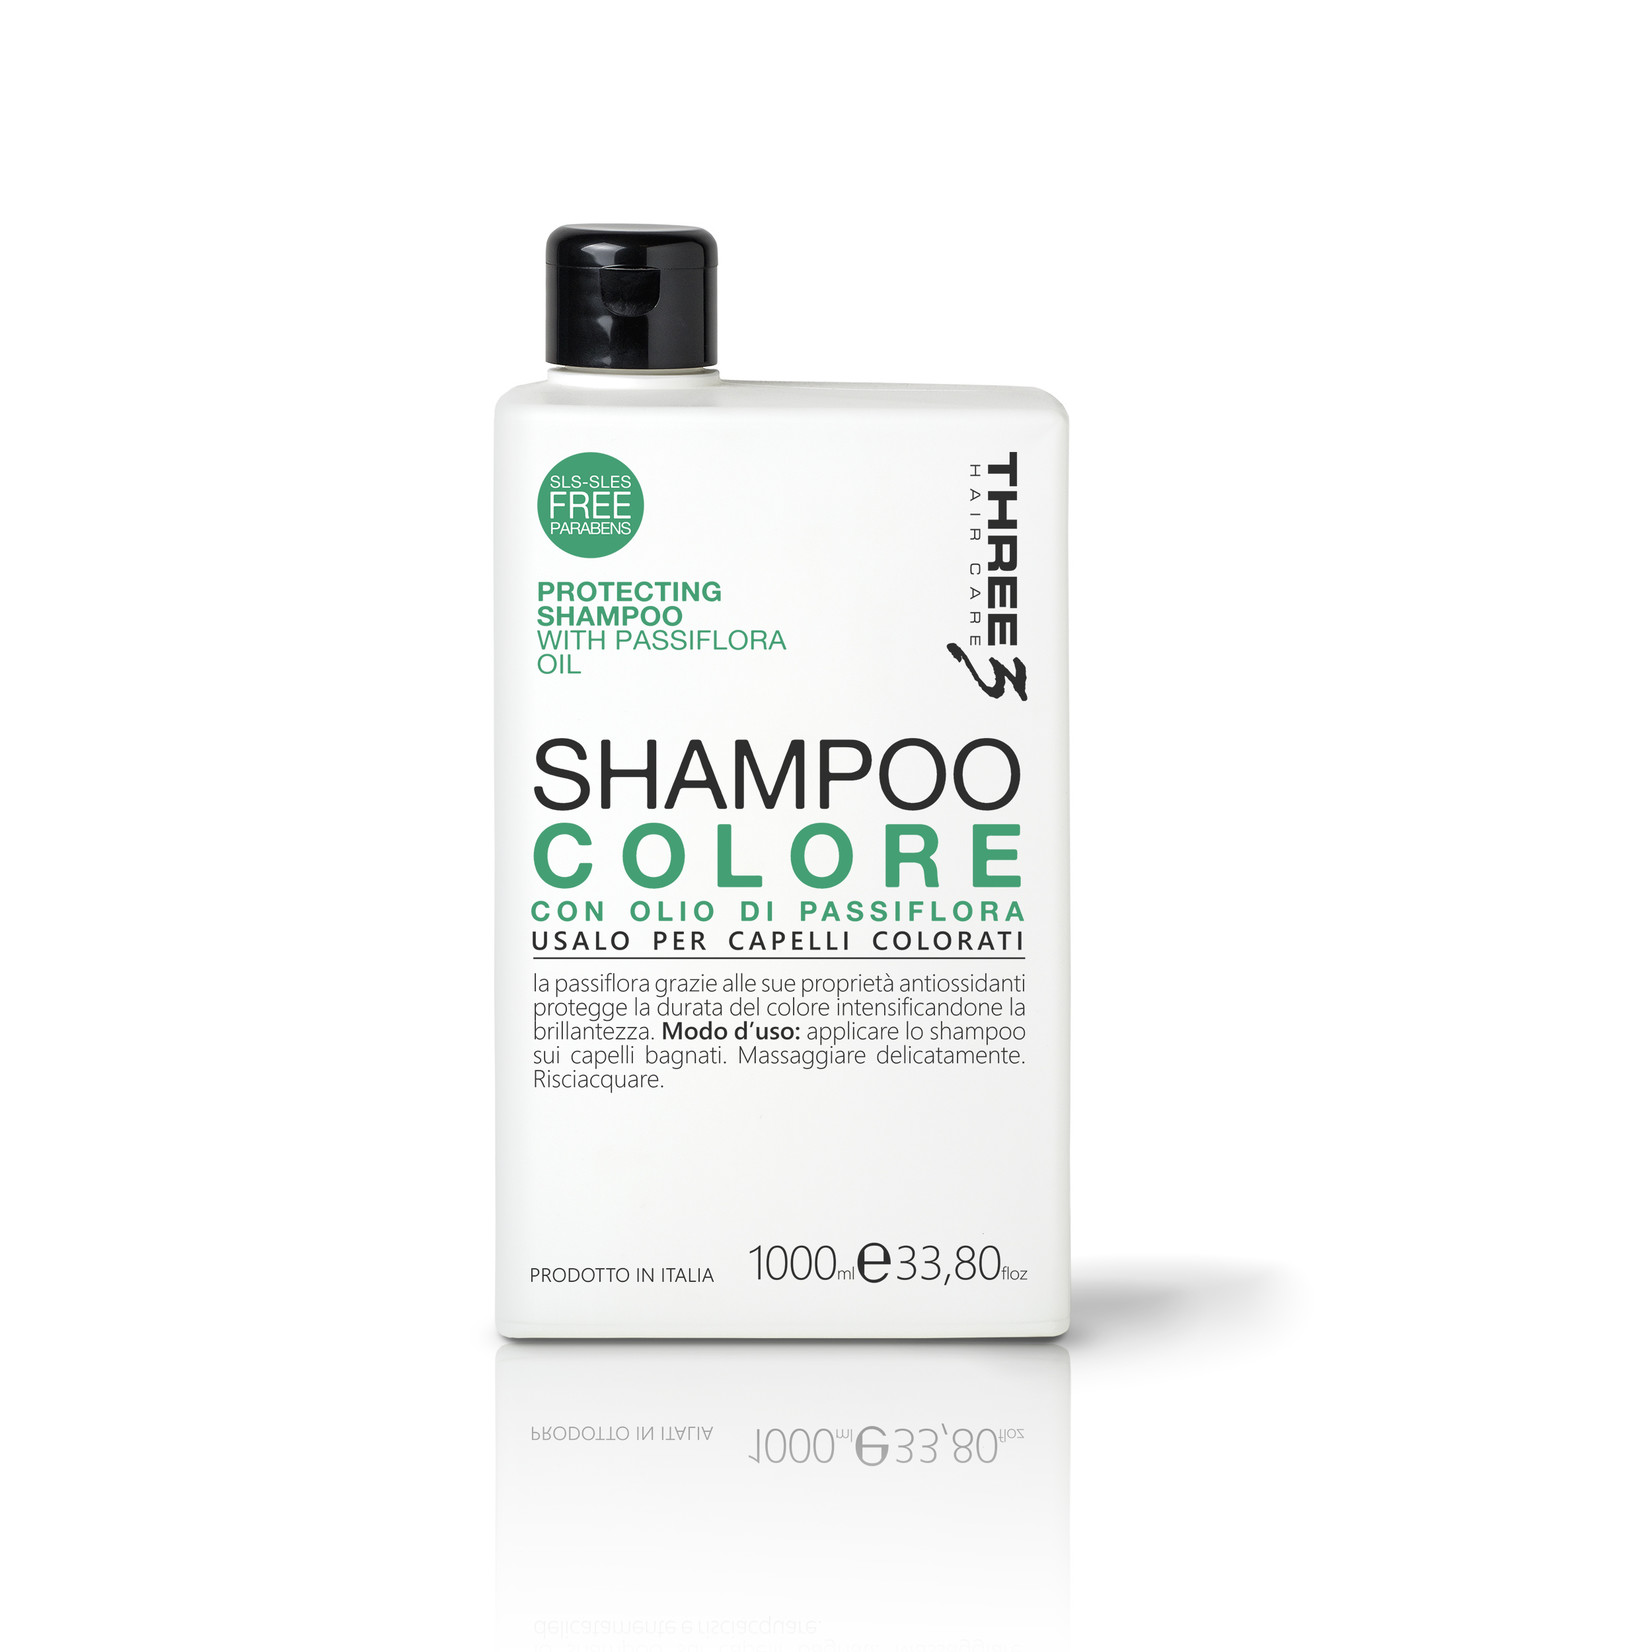 Faipa Three Shampoo Colore 1l